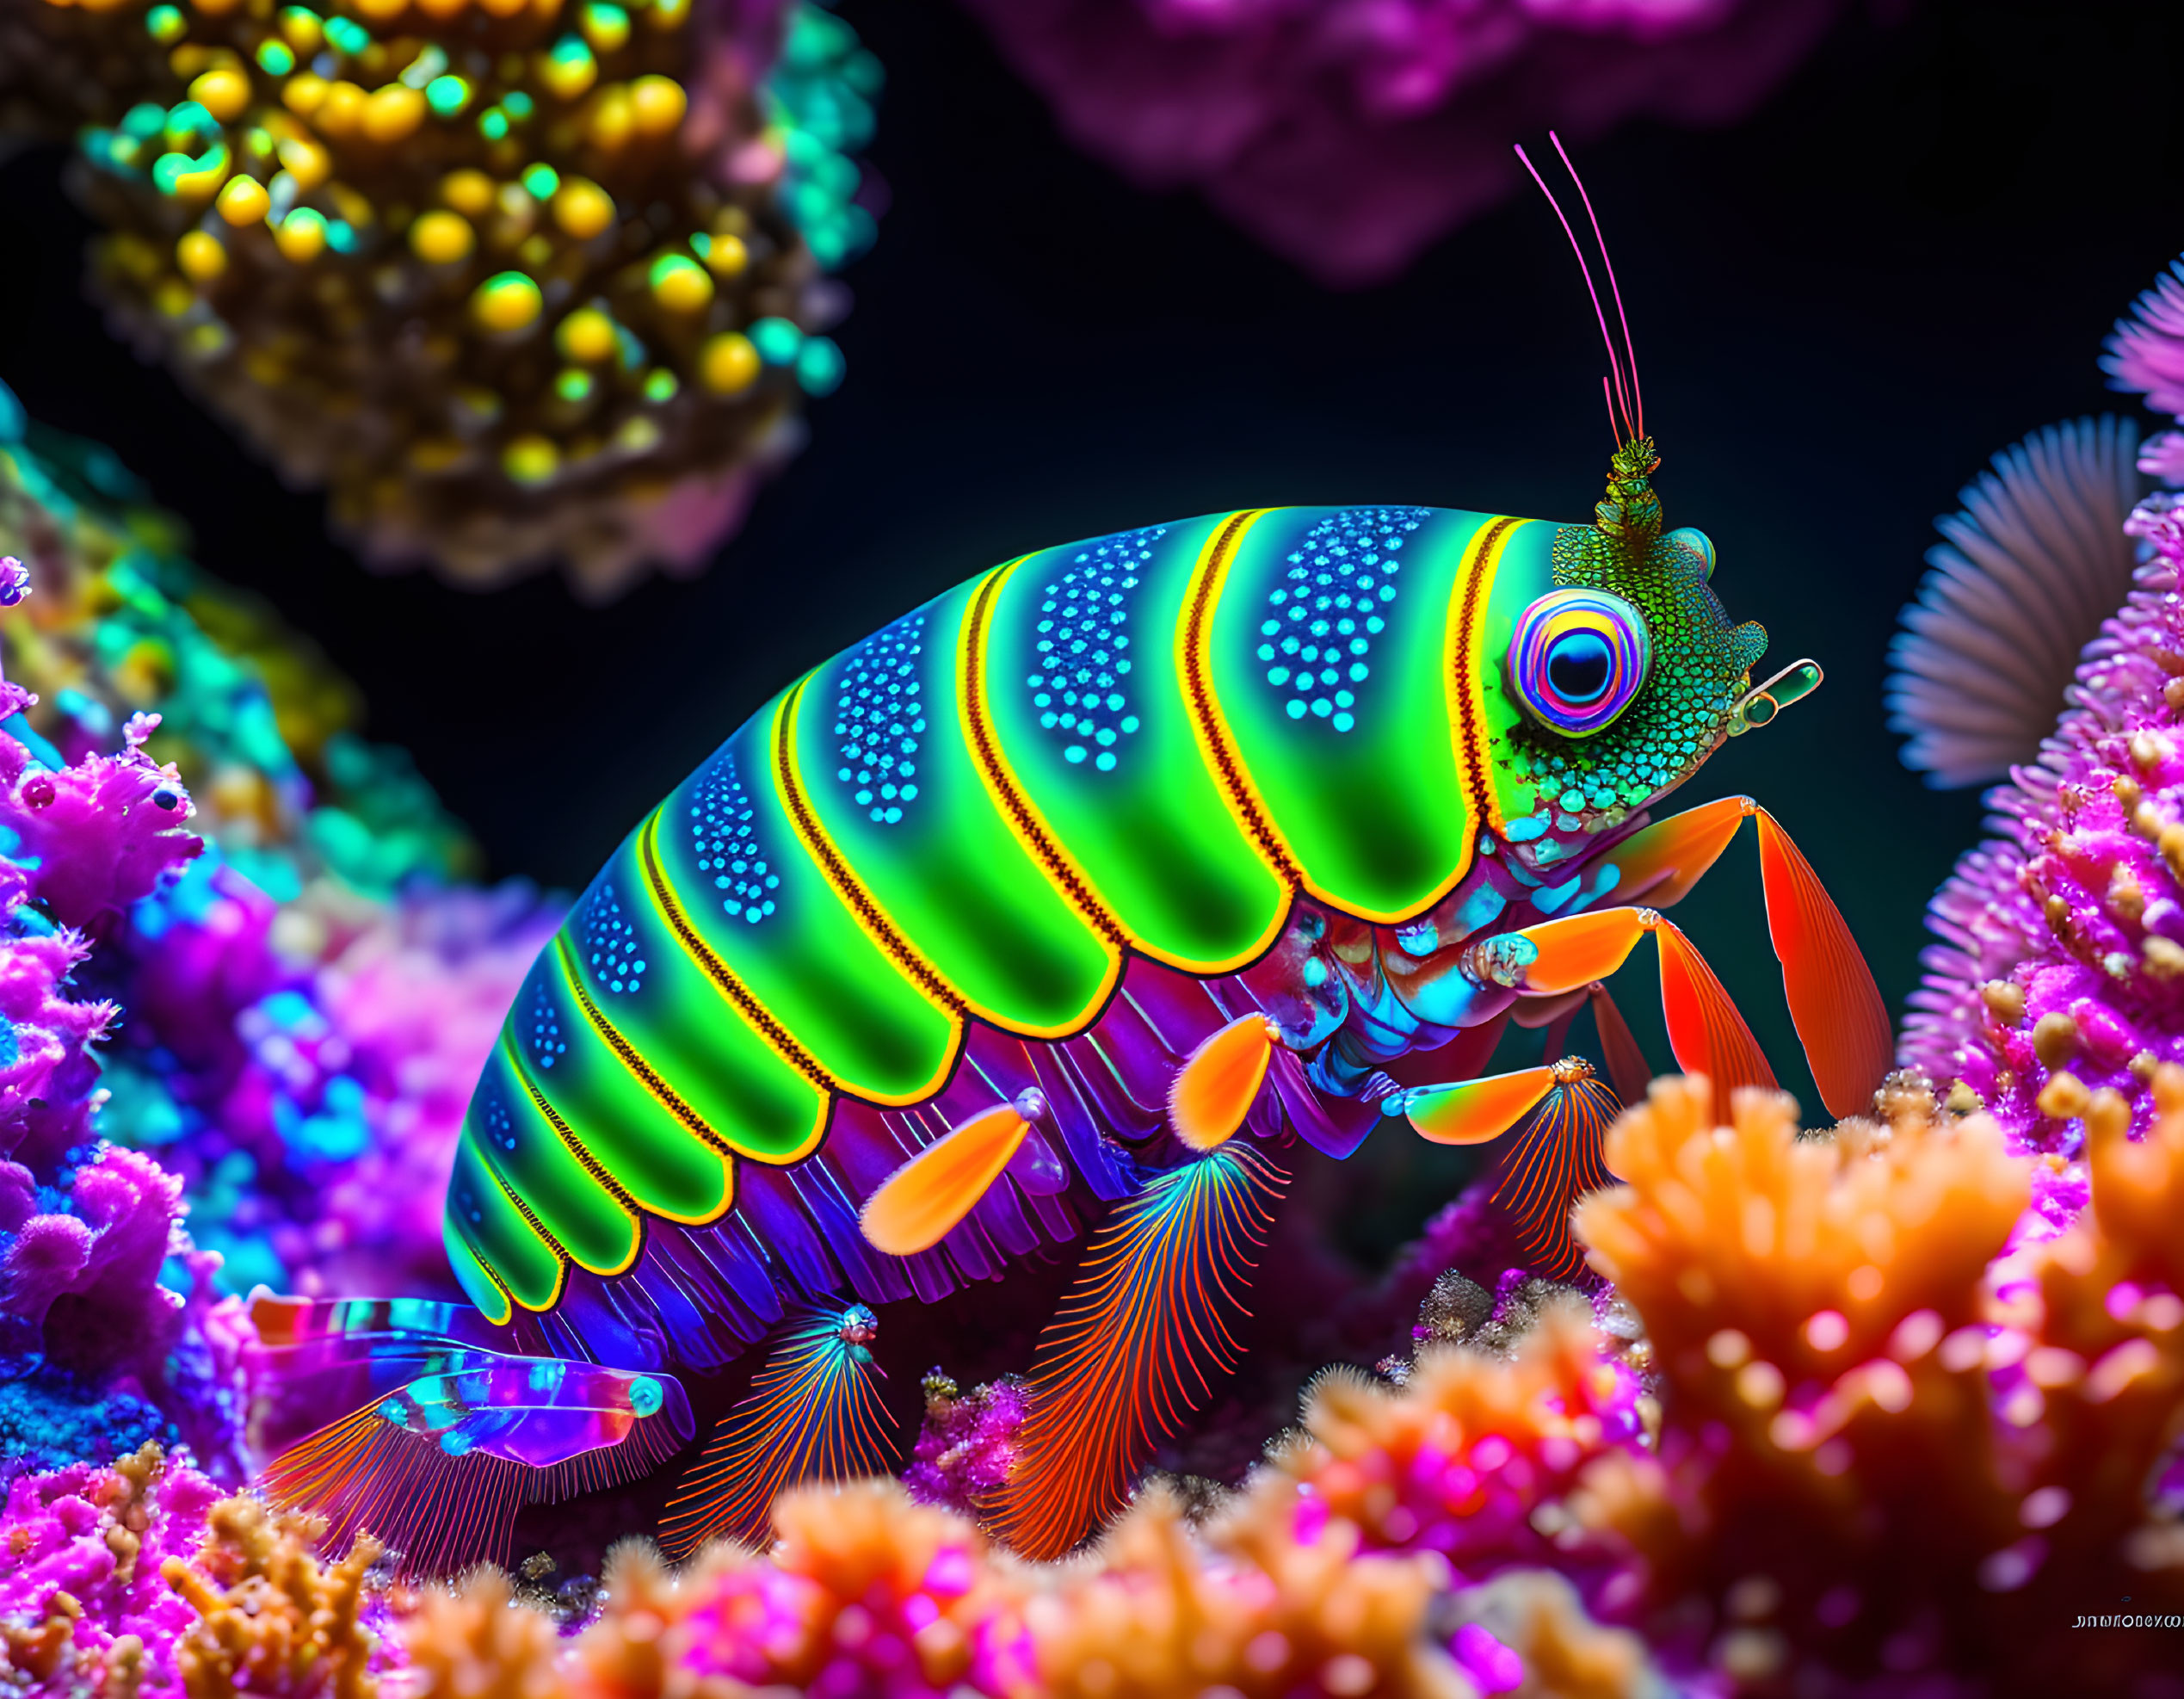 Colorful Digital Art: Mantis Shrimp in Coral Reef